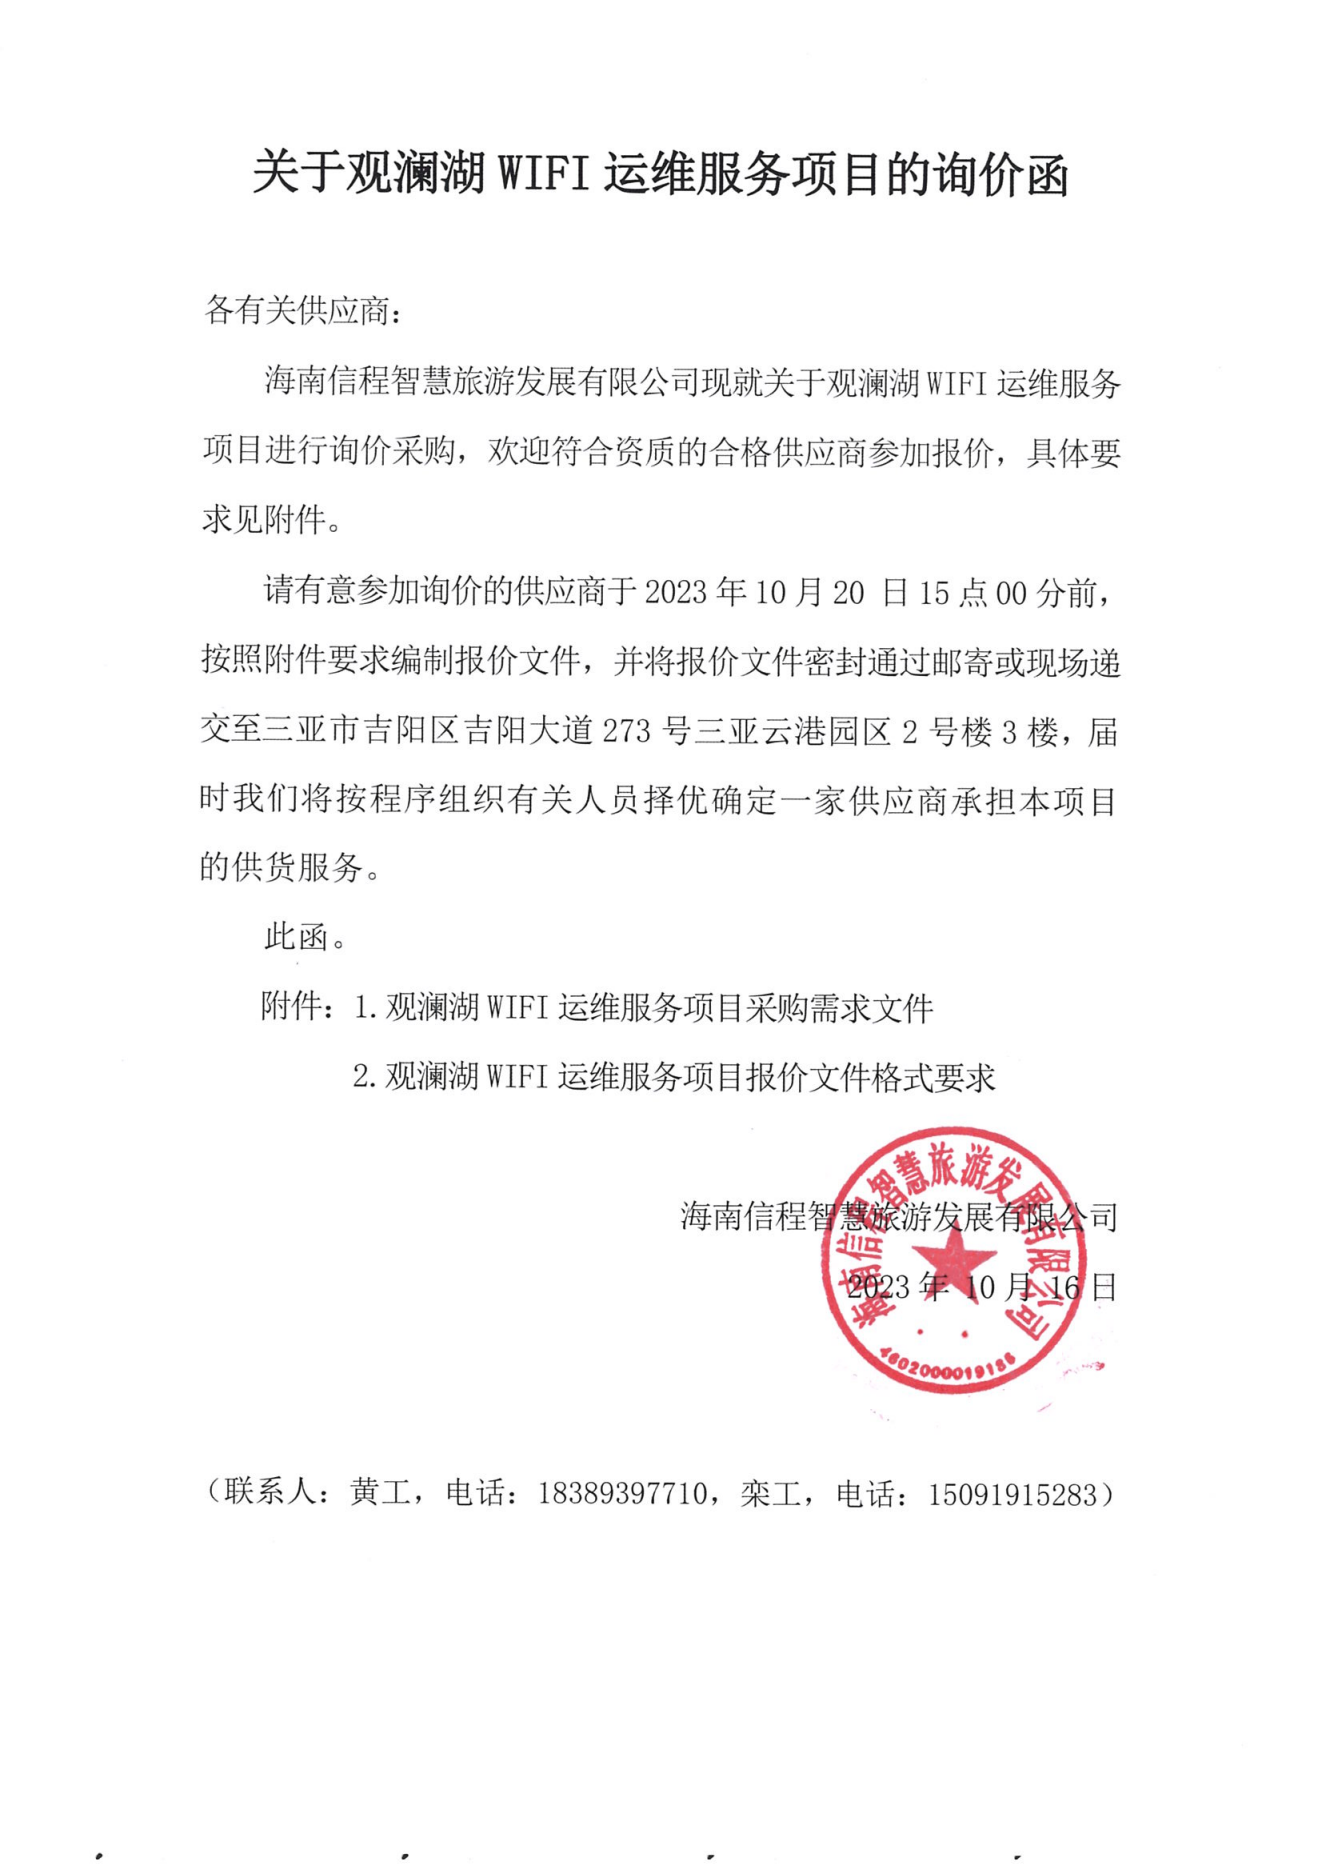 關于觀瀾湖WIFI運維服務項目的詢價函_00.png